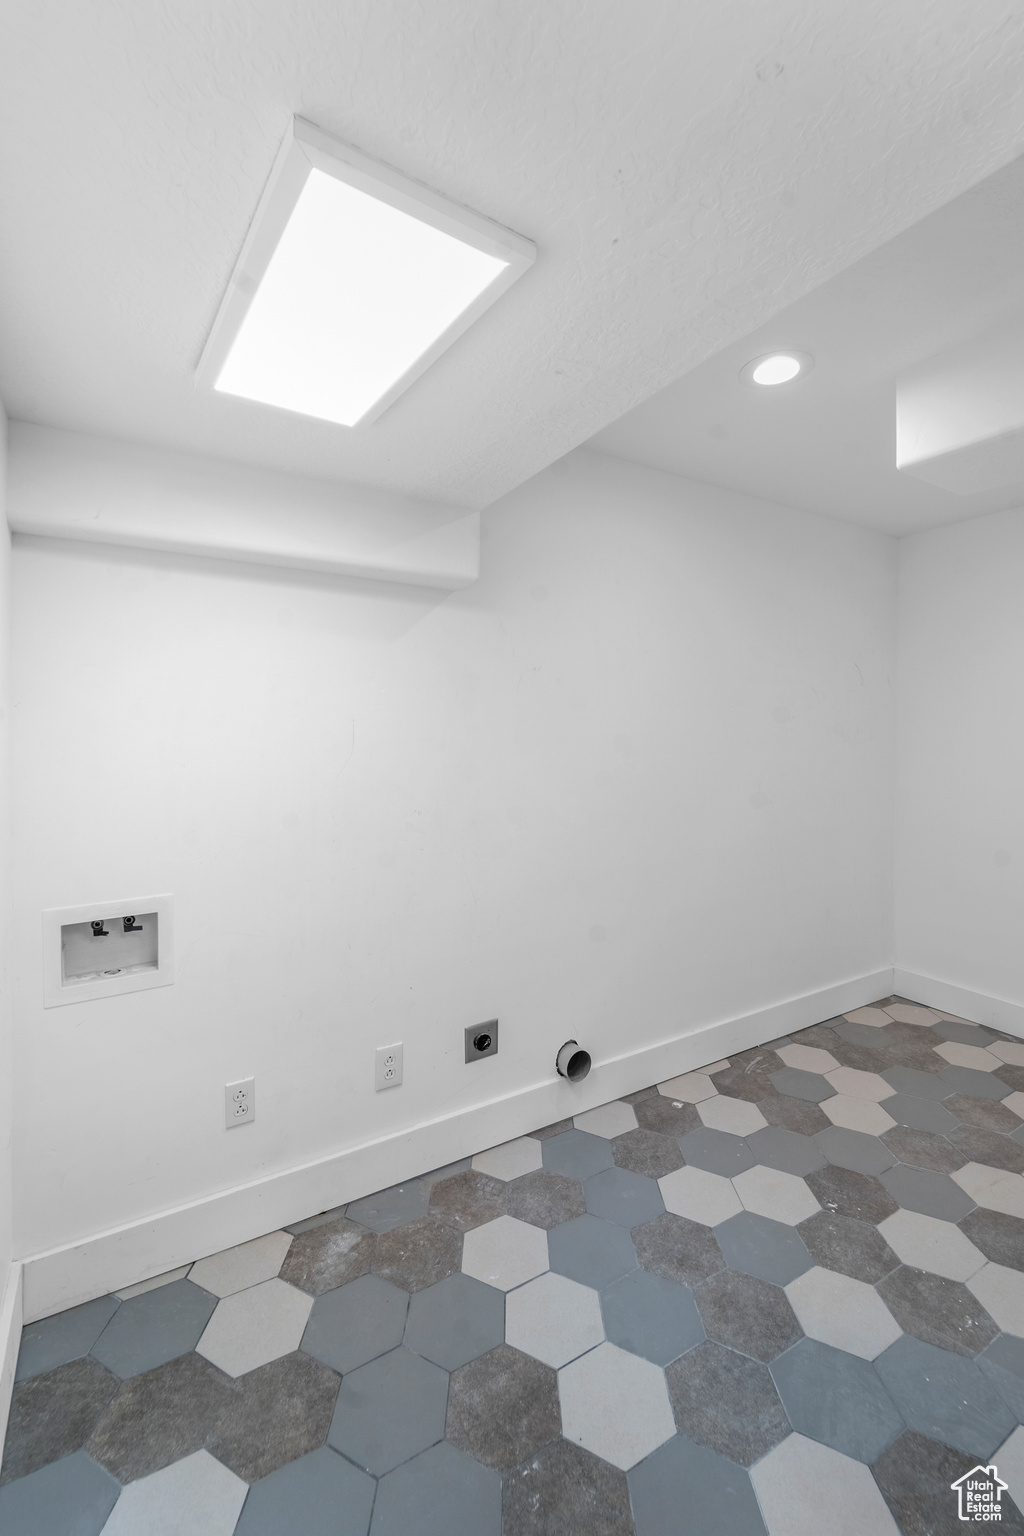 Interior space featuring dark tile flooring